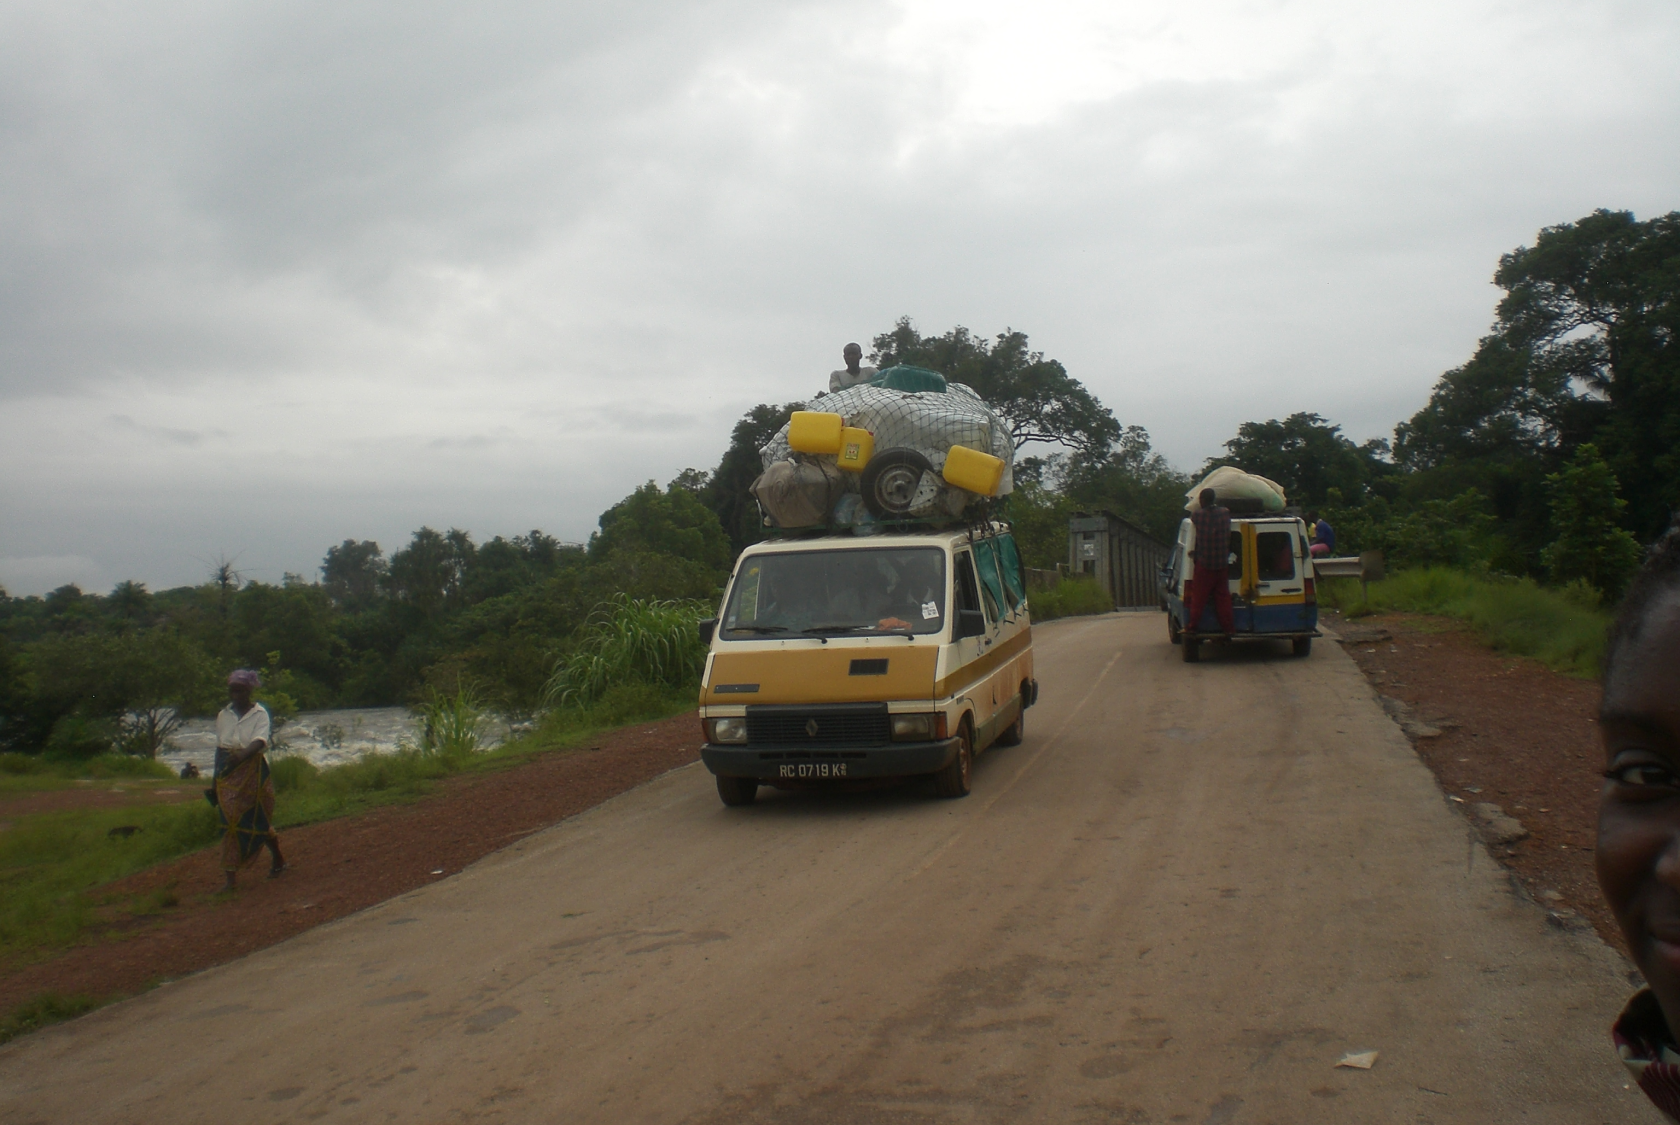 Les bus "Magbana" transports de personnes et marchandises .